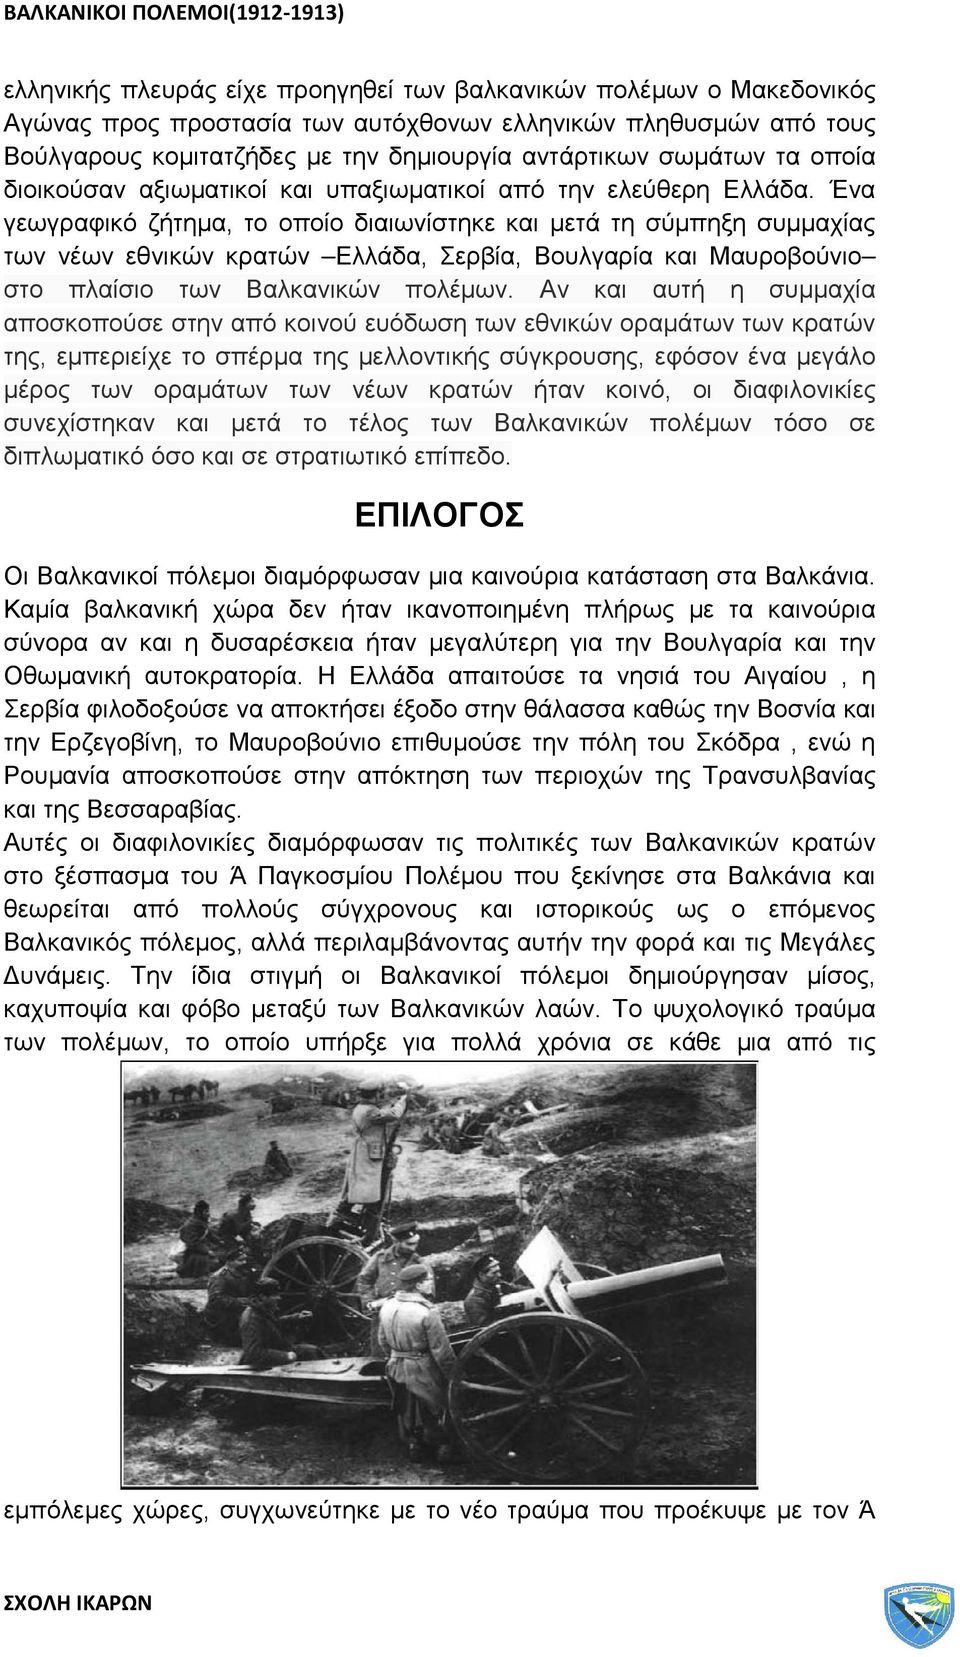 Ένα γεωγραφικό ζήτημα, το οποίο διαιωνίστηκε και μετά τη σύμπηξη συμμαχίας των νέων εθνικών κρατών Ελλάδα, Σερβία, Βουλγαρία και Μαυροβούνιο στο πλαίσιο των Βαλκανικών πολέμων.